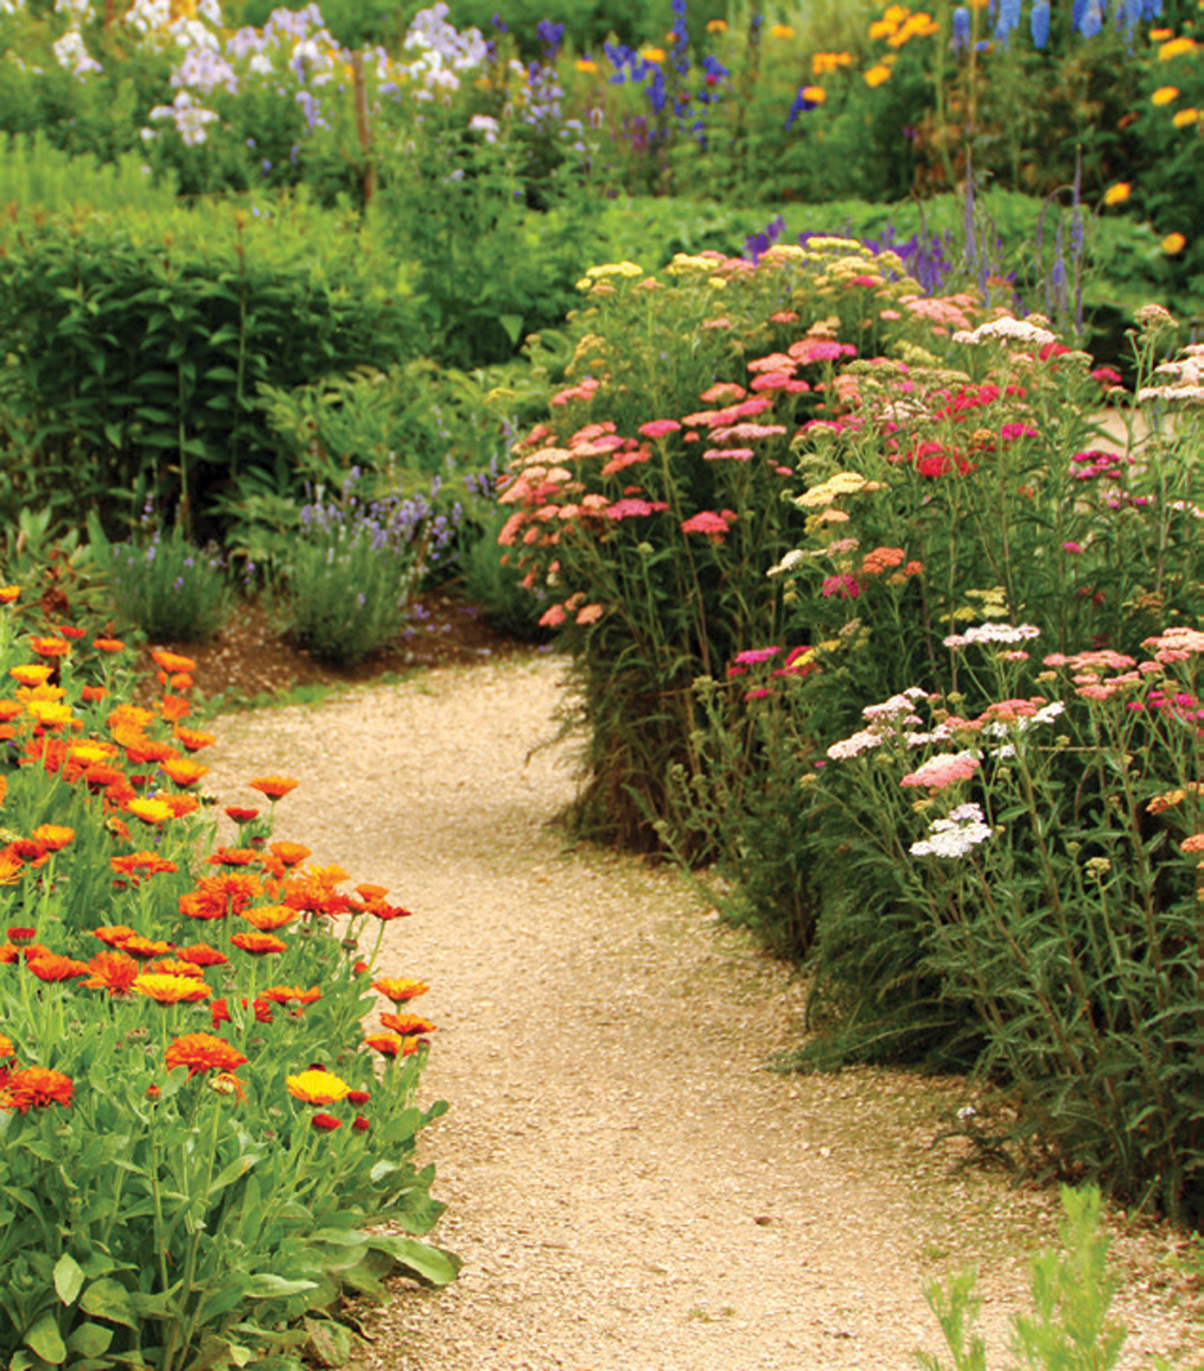 Herb and flower garden